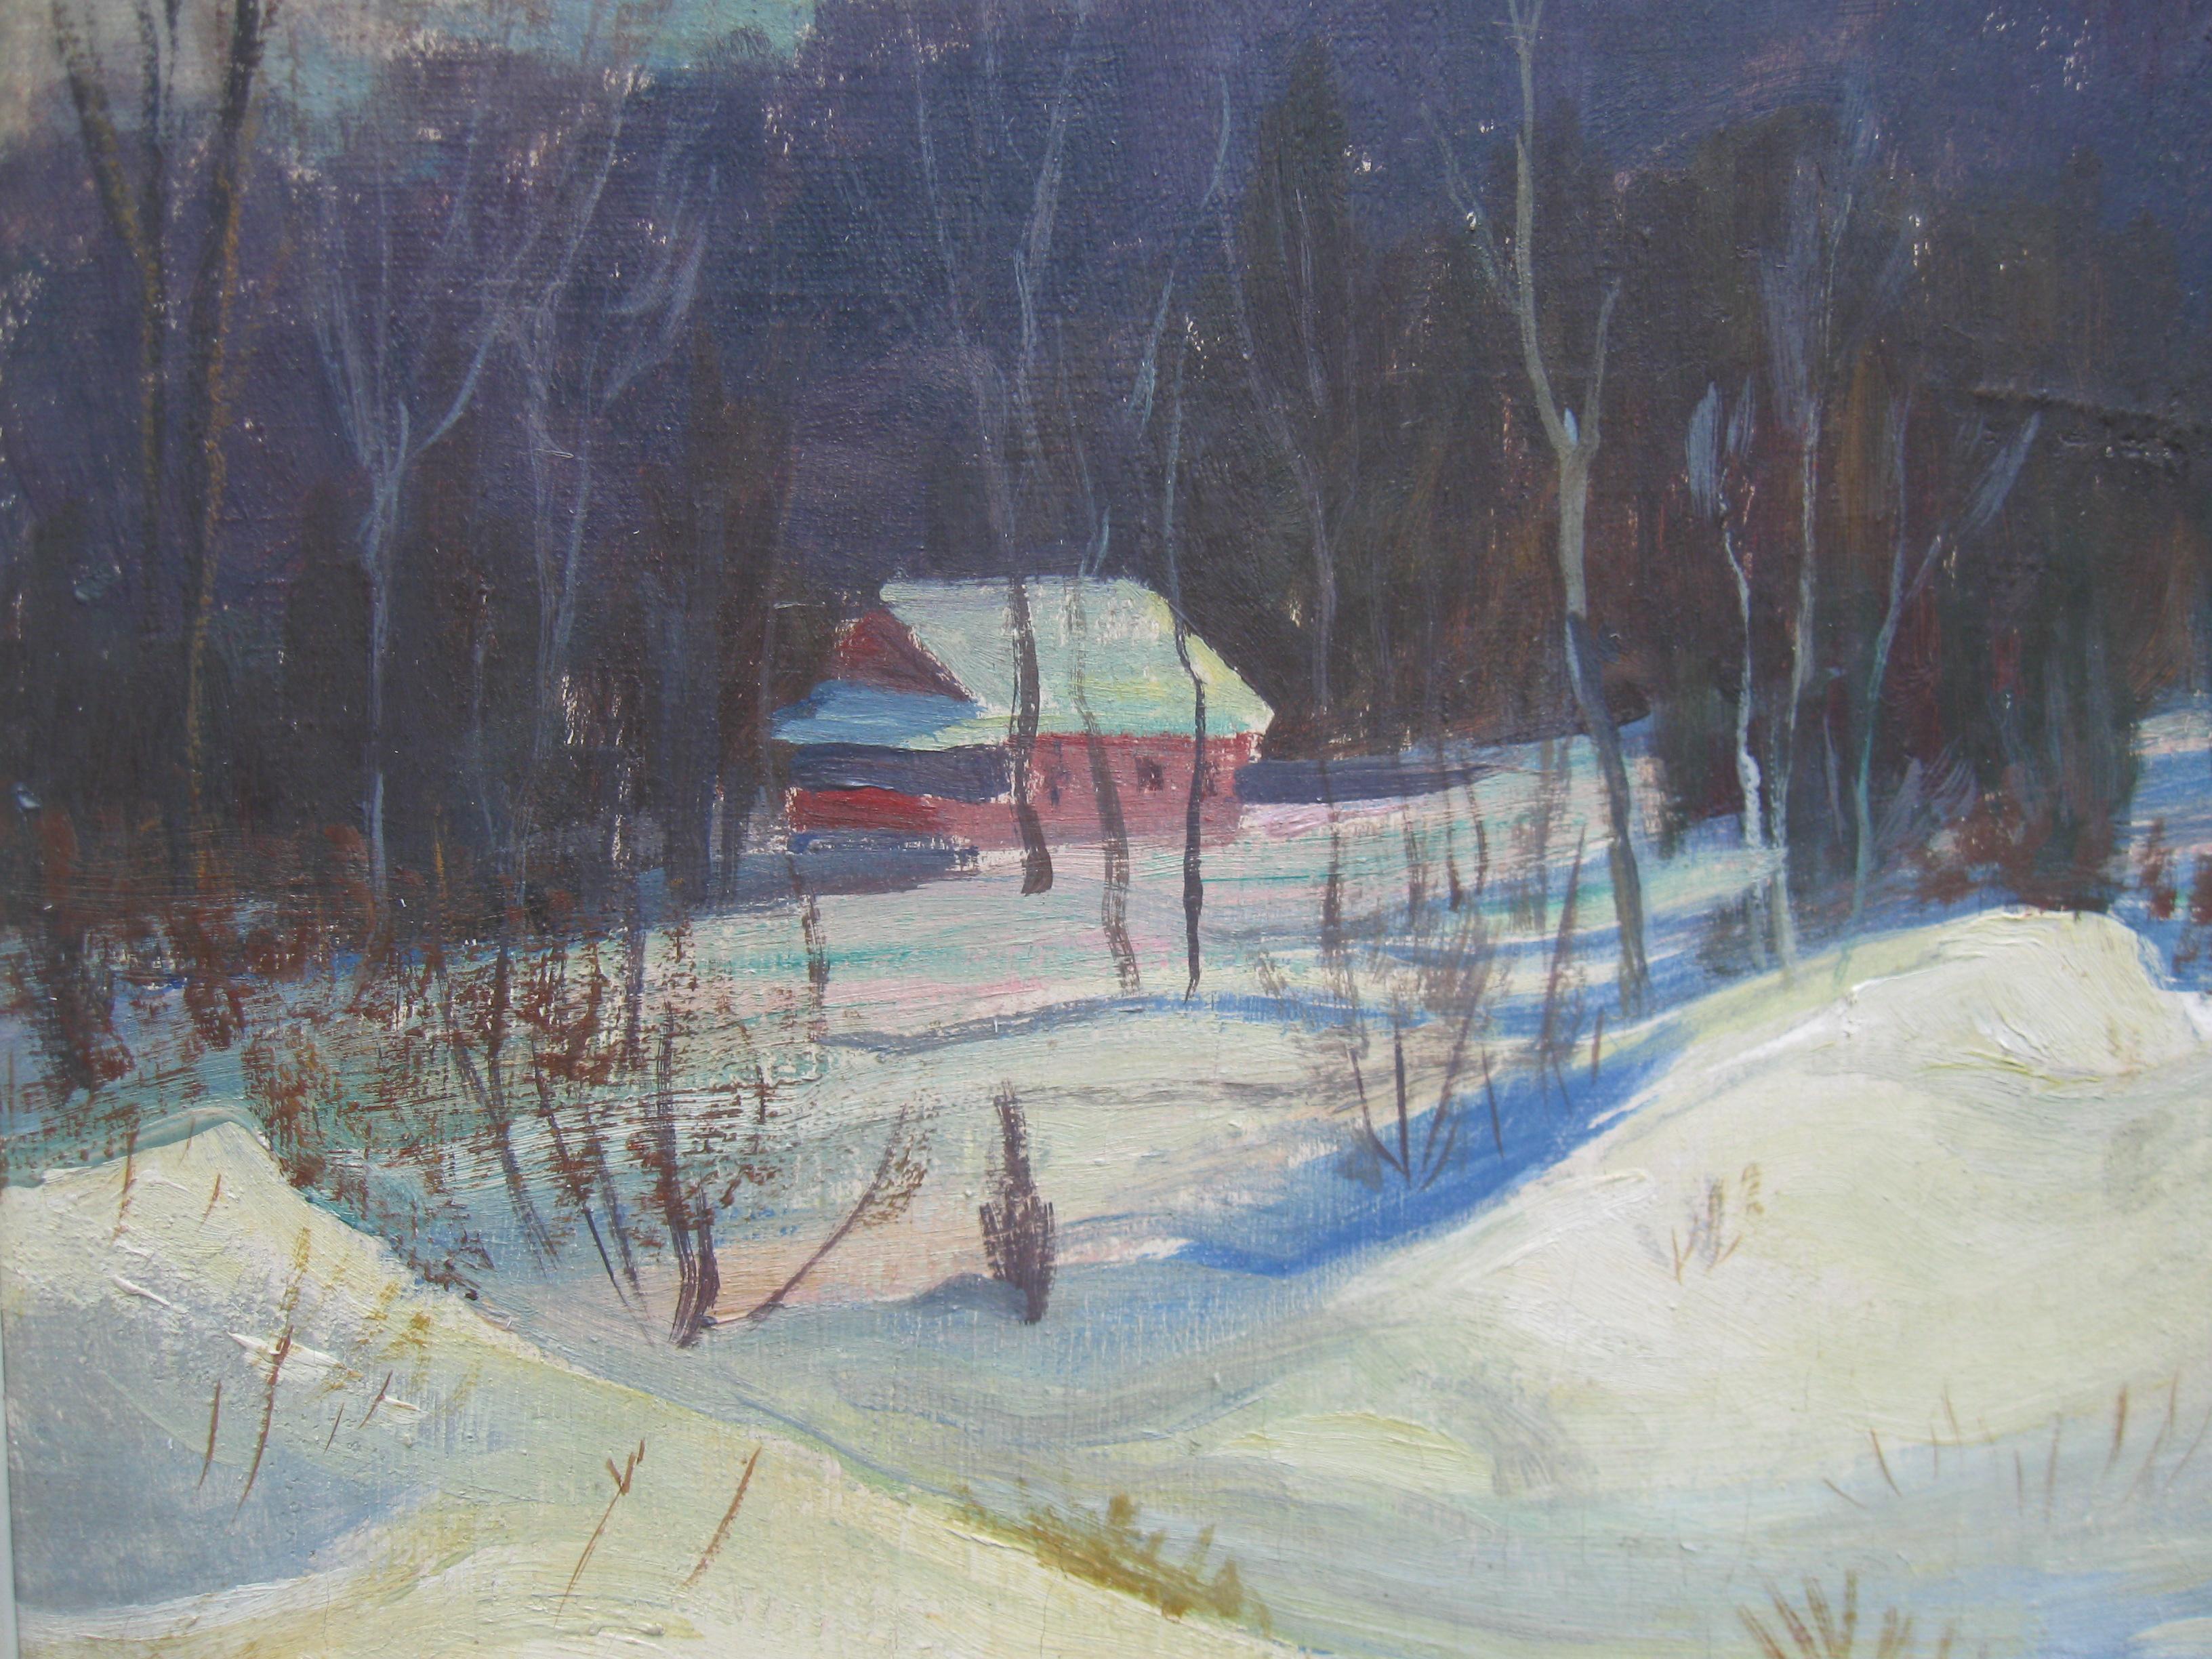 Wunderschönes postimpressionistisches Öl auf Leinwand mit sonnenbeschienenen Schneeverwehungen in einer bewaldeten Landschaft mit einer Hütte im Hintergrund. Um 1950.
öl auf Leinwand 40cmx50cm
der Originalrahmen 52cmx62cm
Wunderbare Wirksamkeit der